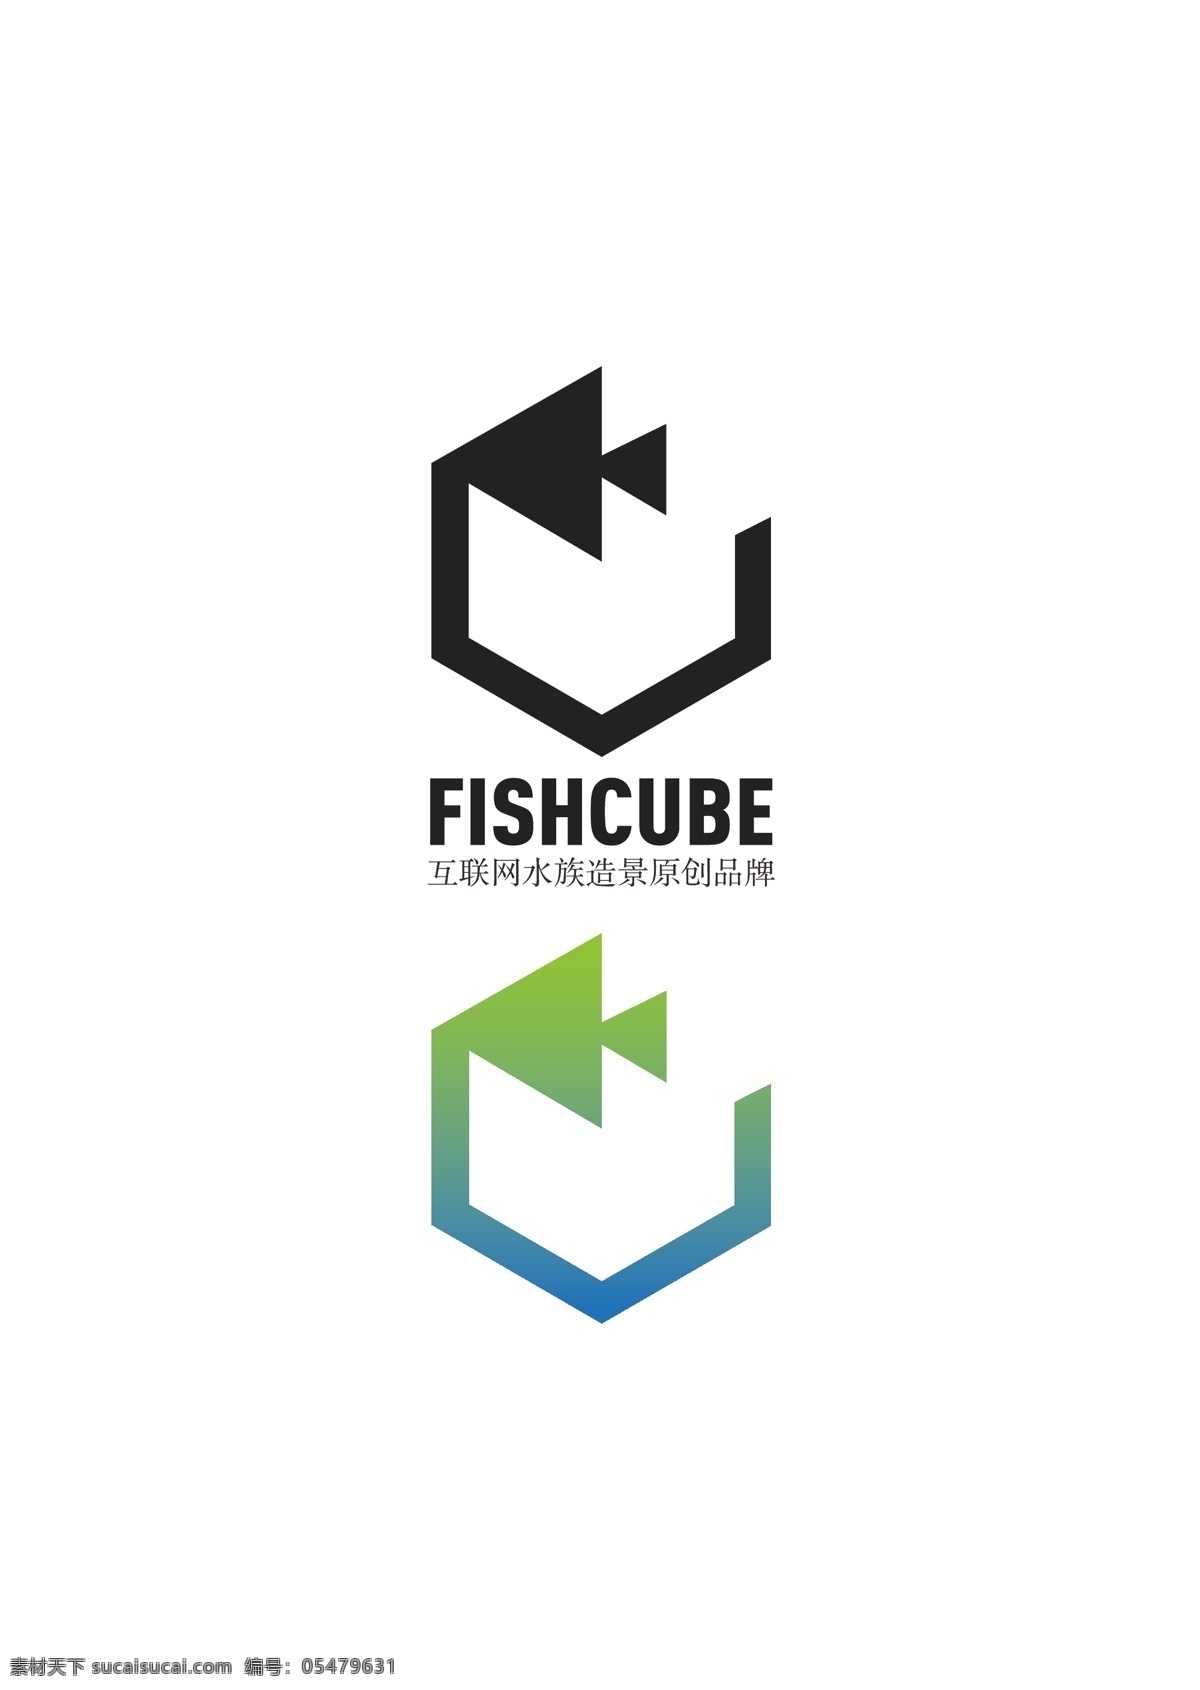 鱼 块 科技 公司 logo 鱼块 标志 标识 vi icon 水族 造景 企业 互联网 创业 方块 标志图标